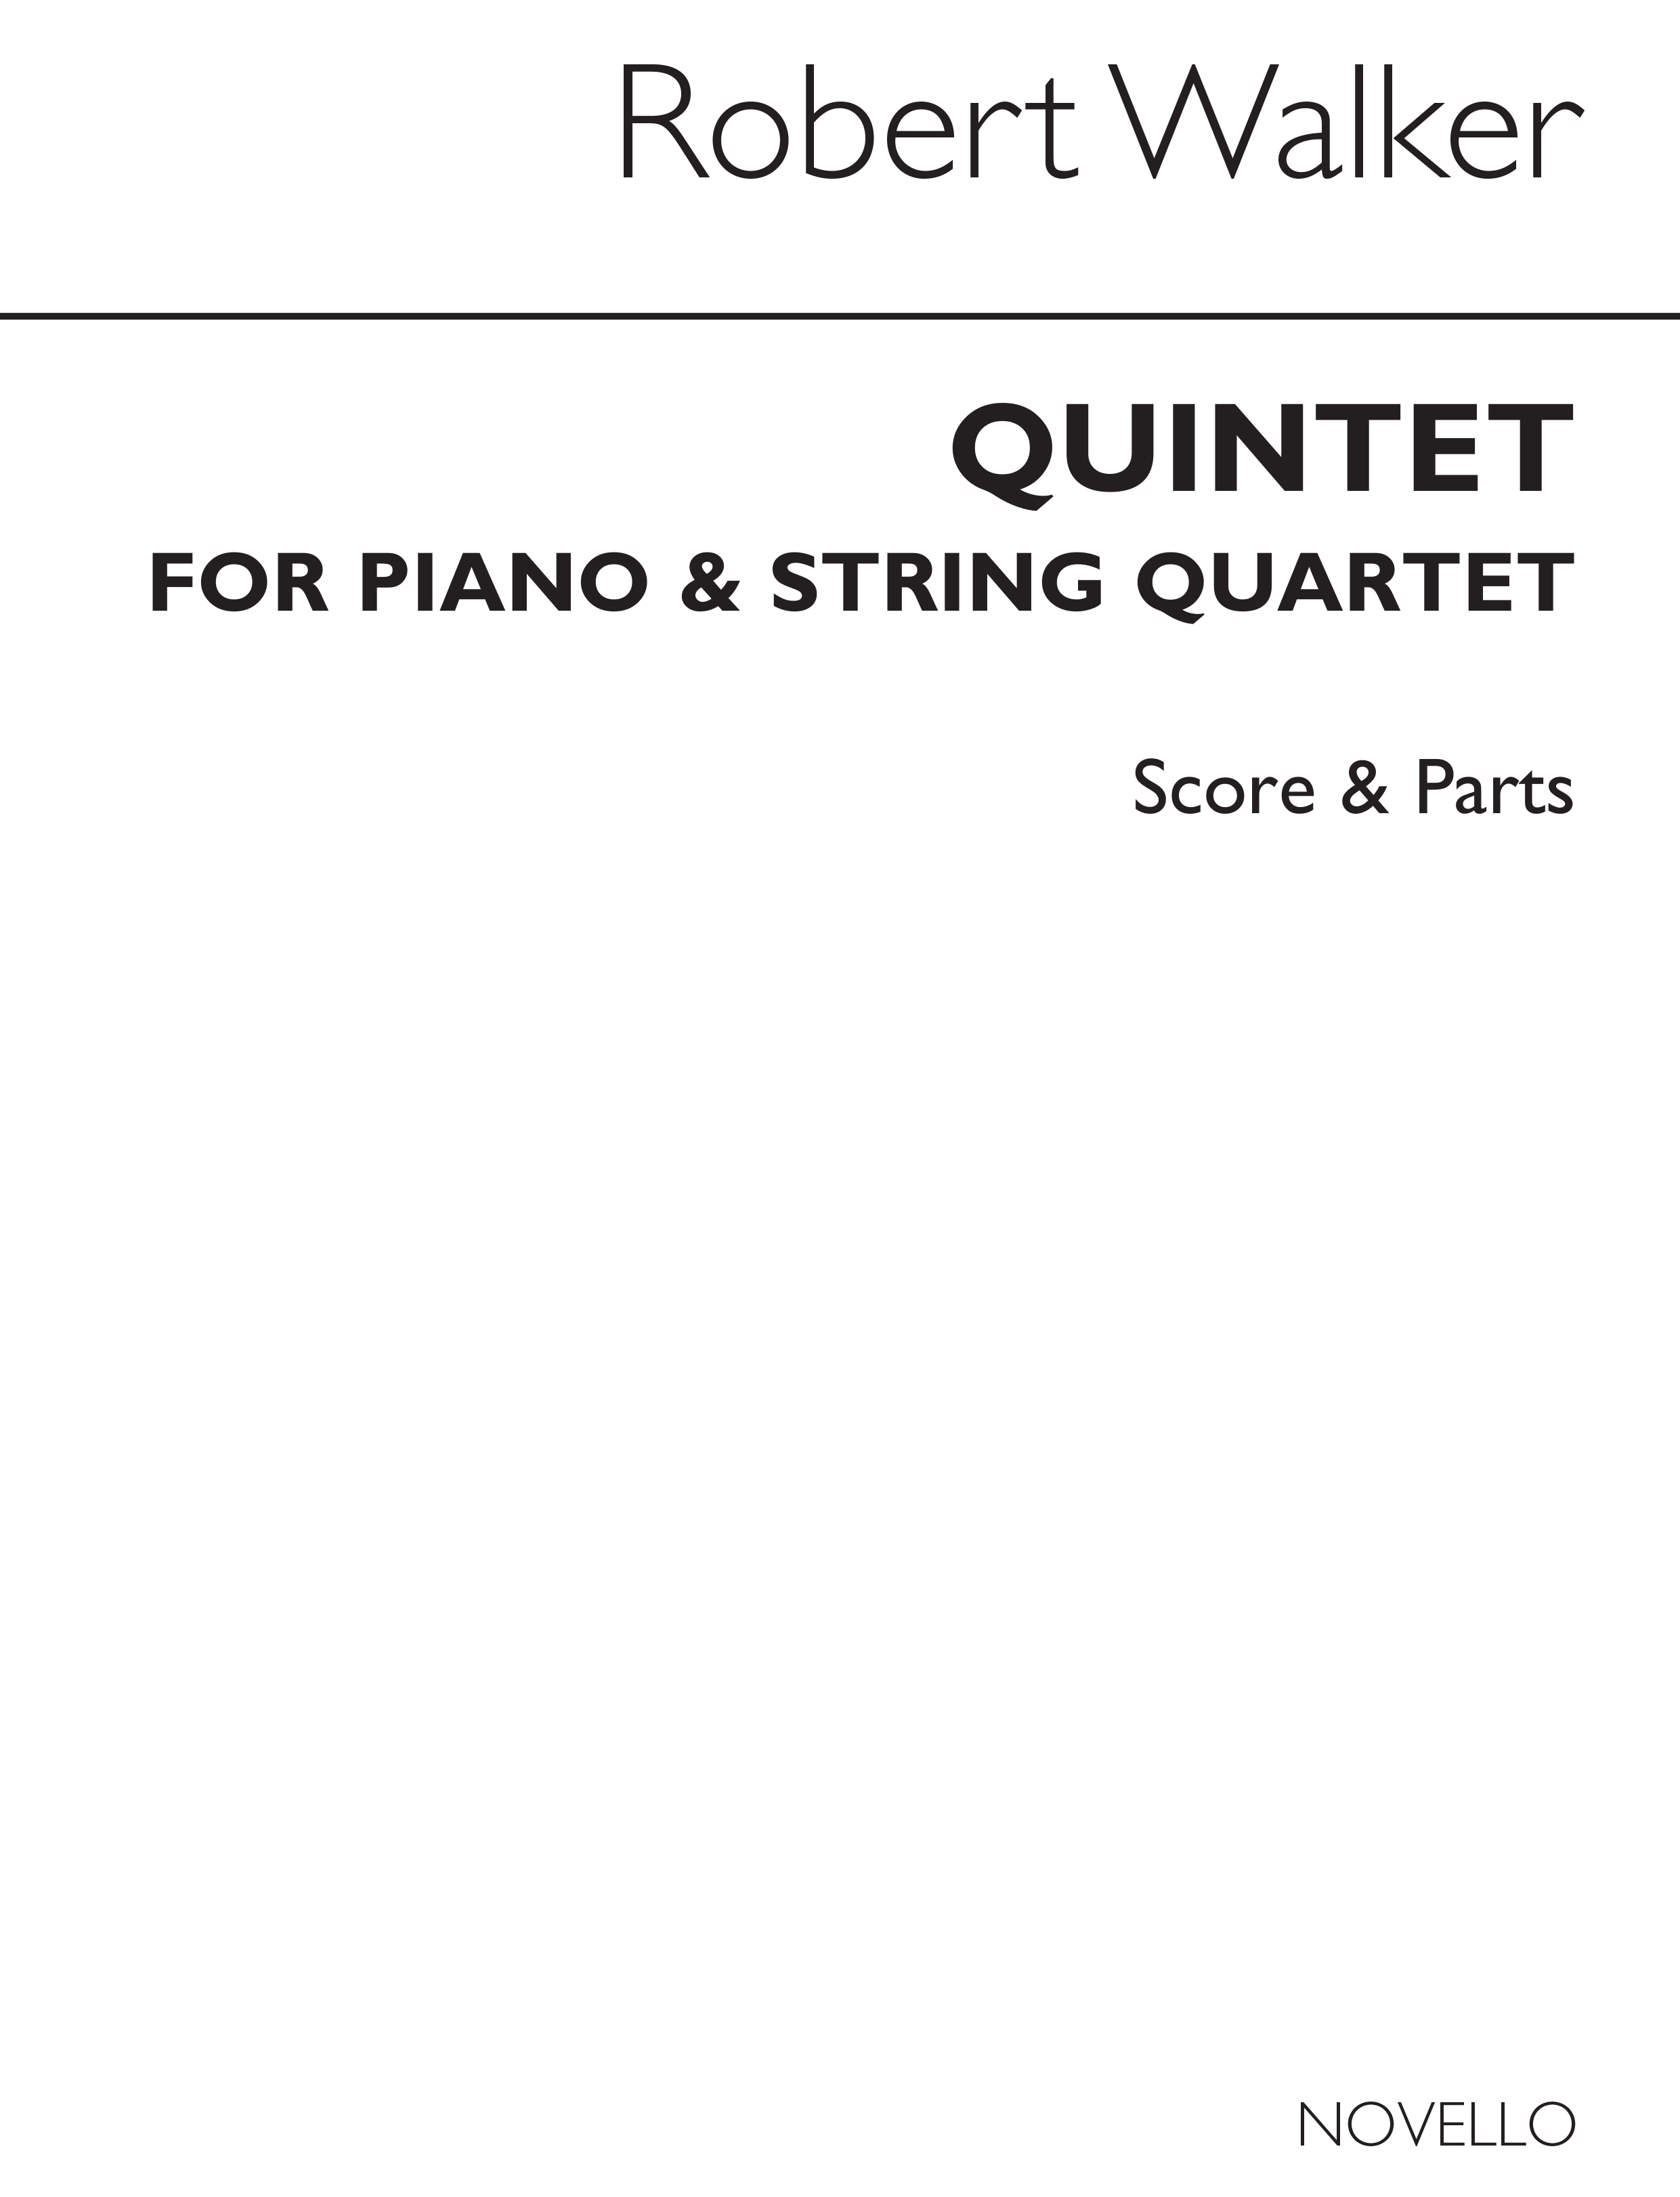 Robert Walker: Piano Quintet: String Quartet: Score and Parts